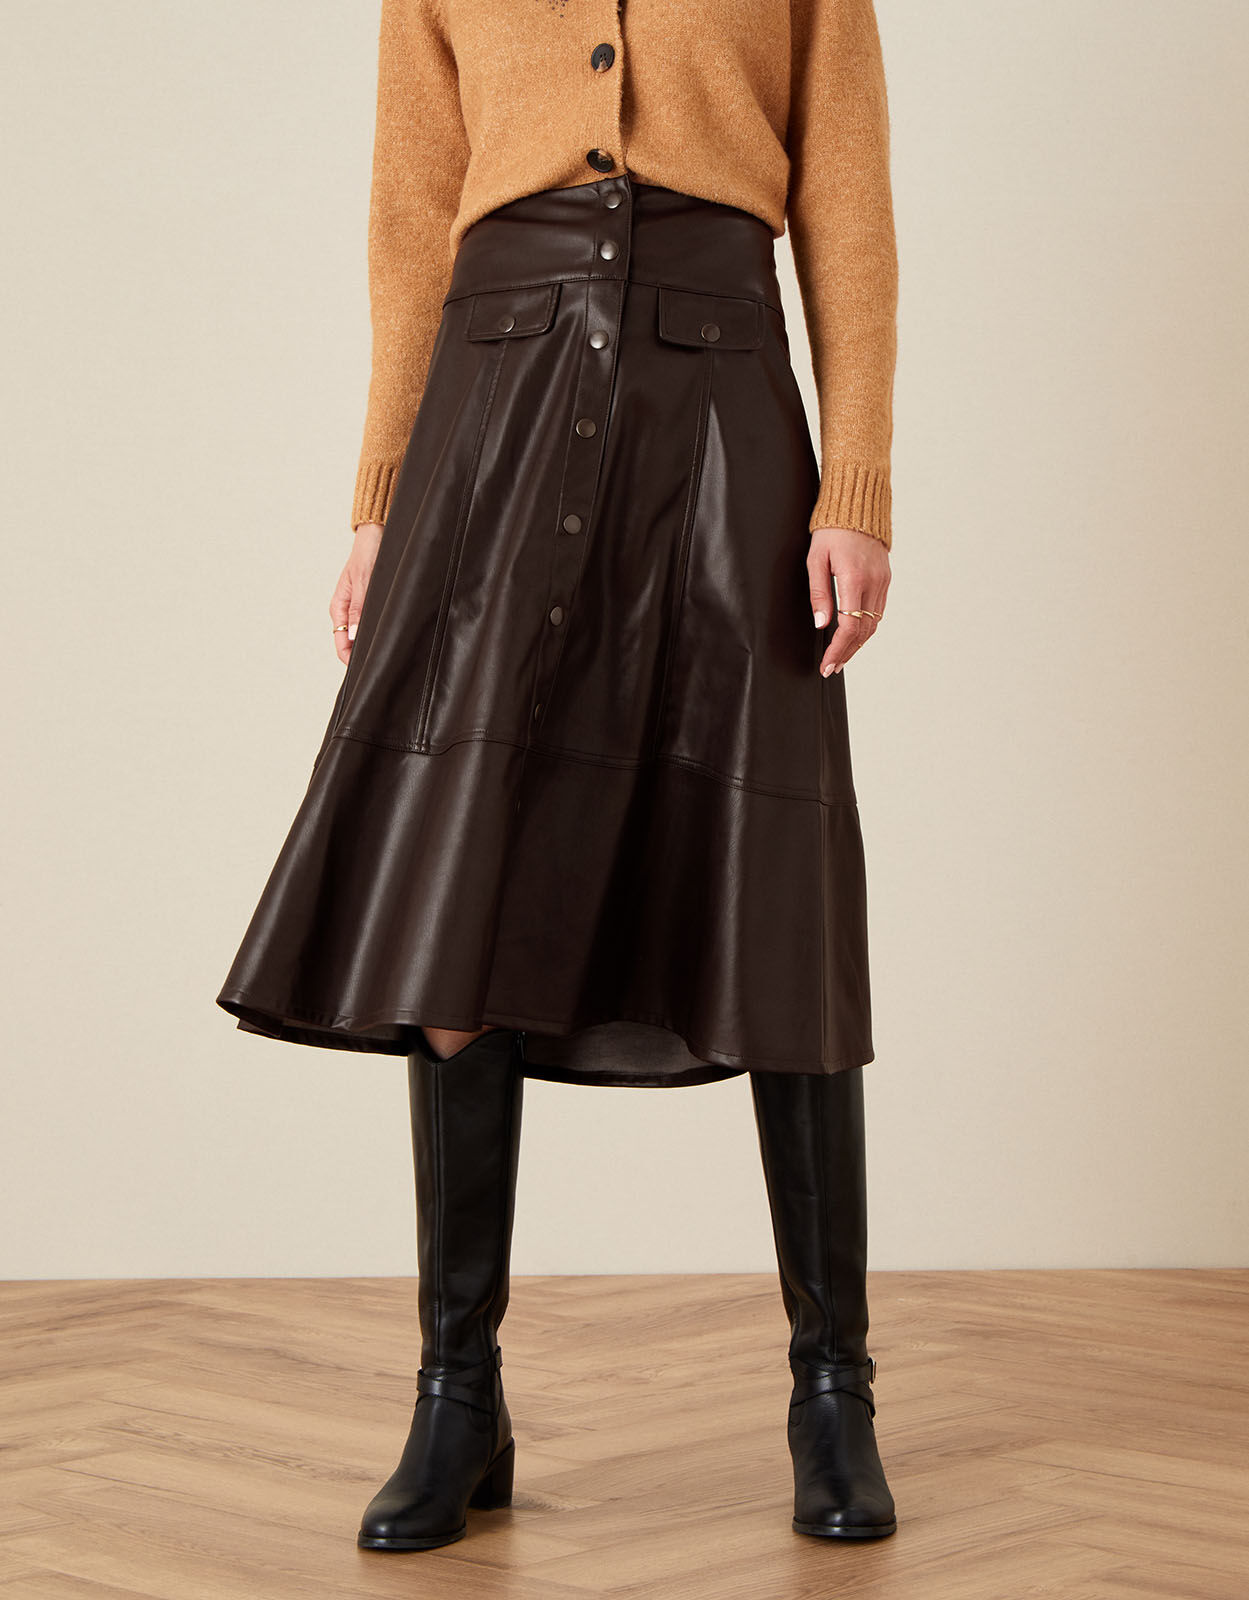 brown midi skirt uk